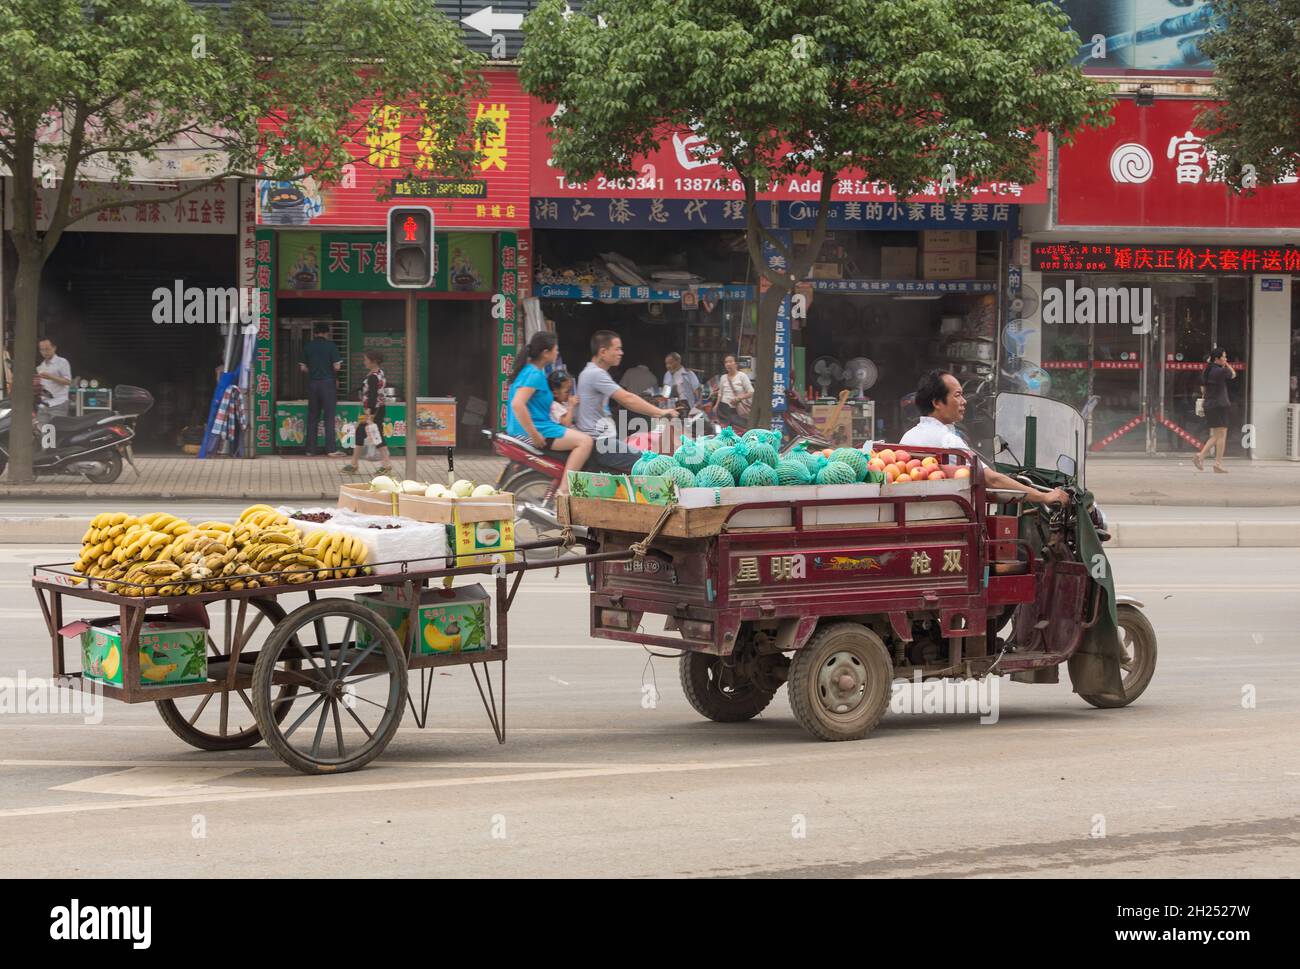 Un carrello motorizzato a tre ruote traina un carrello da frutta, portando i prodotti sul mercato in Cina. Foto Stock